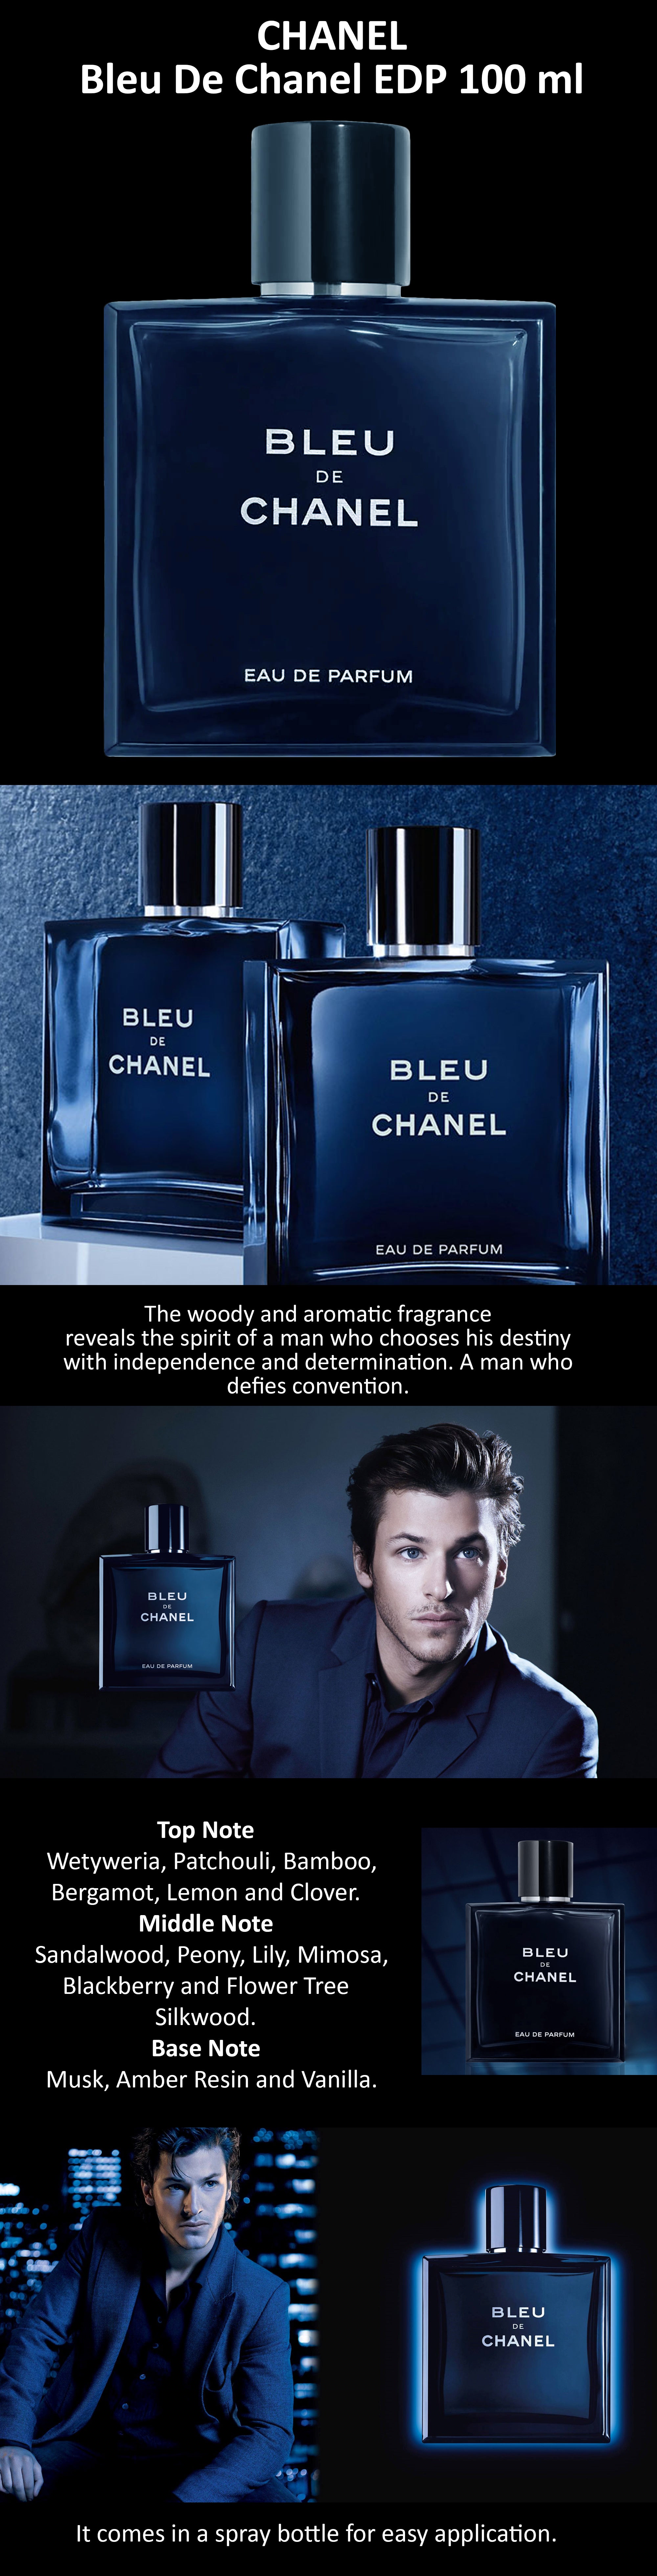 CHANEL Bleu De Chanel Paris EDP Pour Homme Vaporisateur Spray For